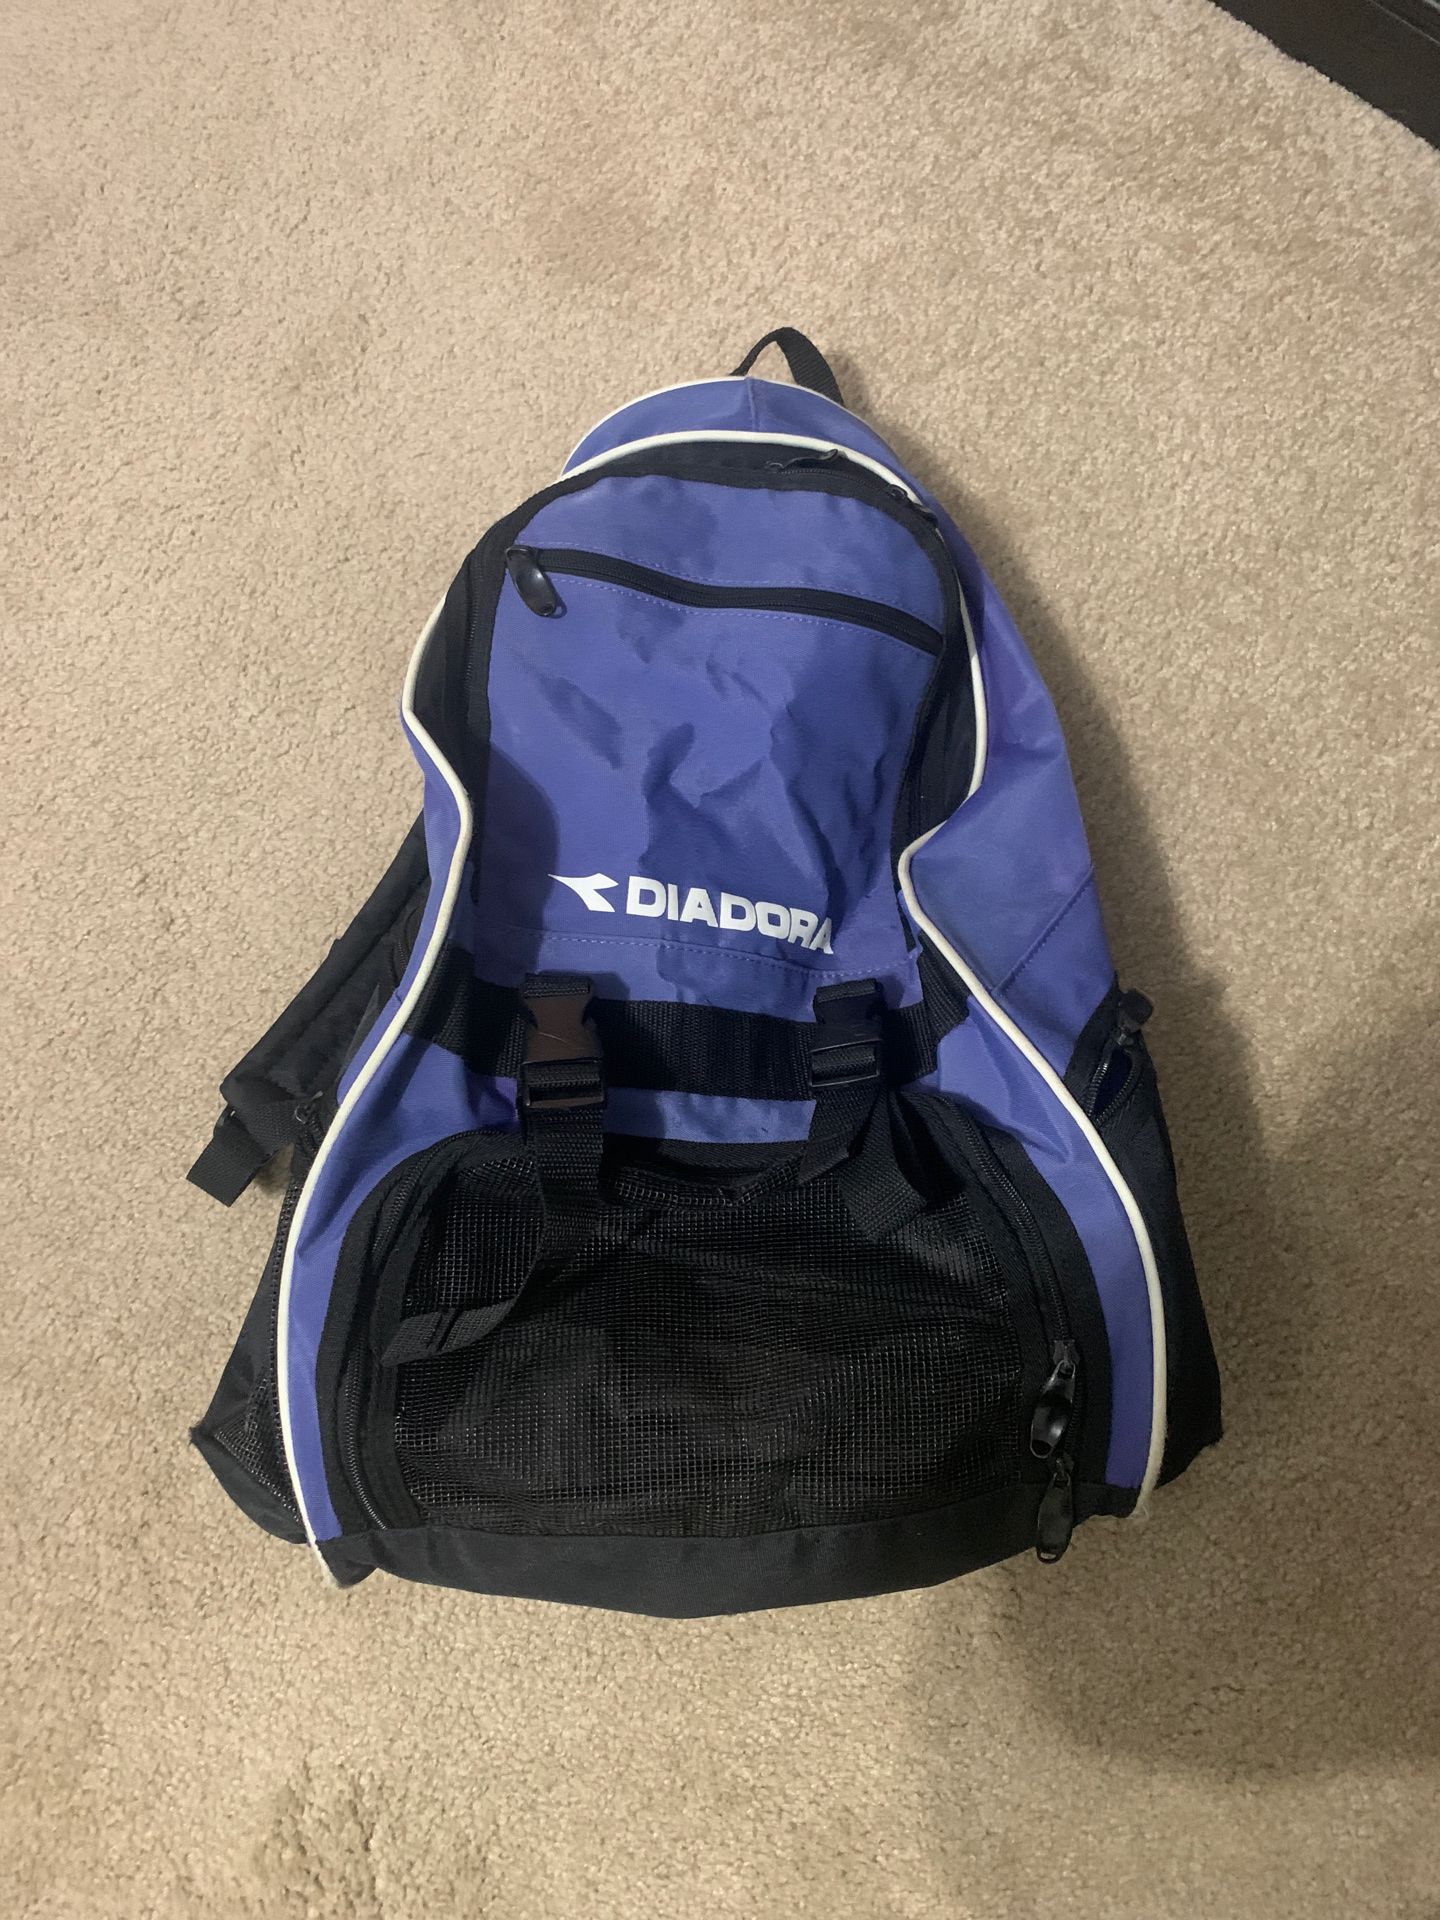 Diadora soccer bag